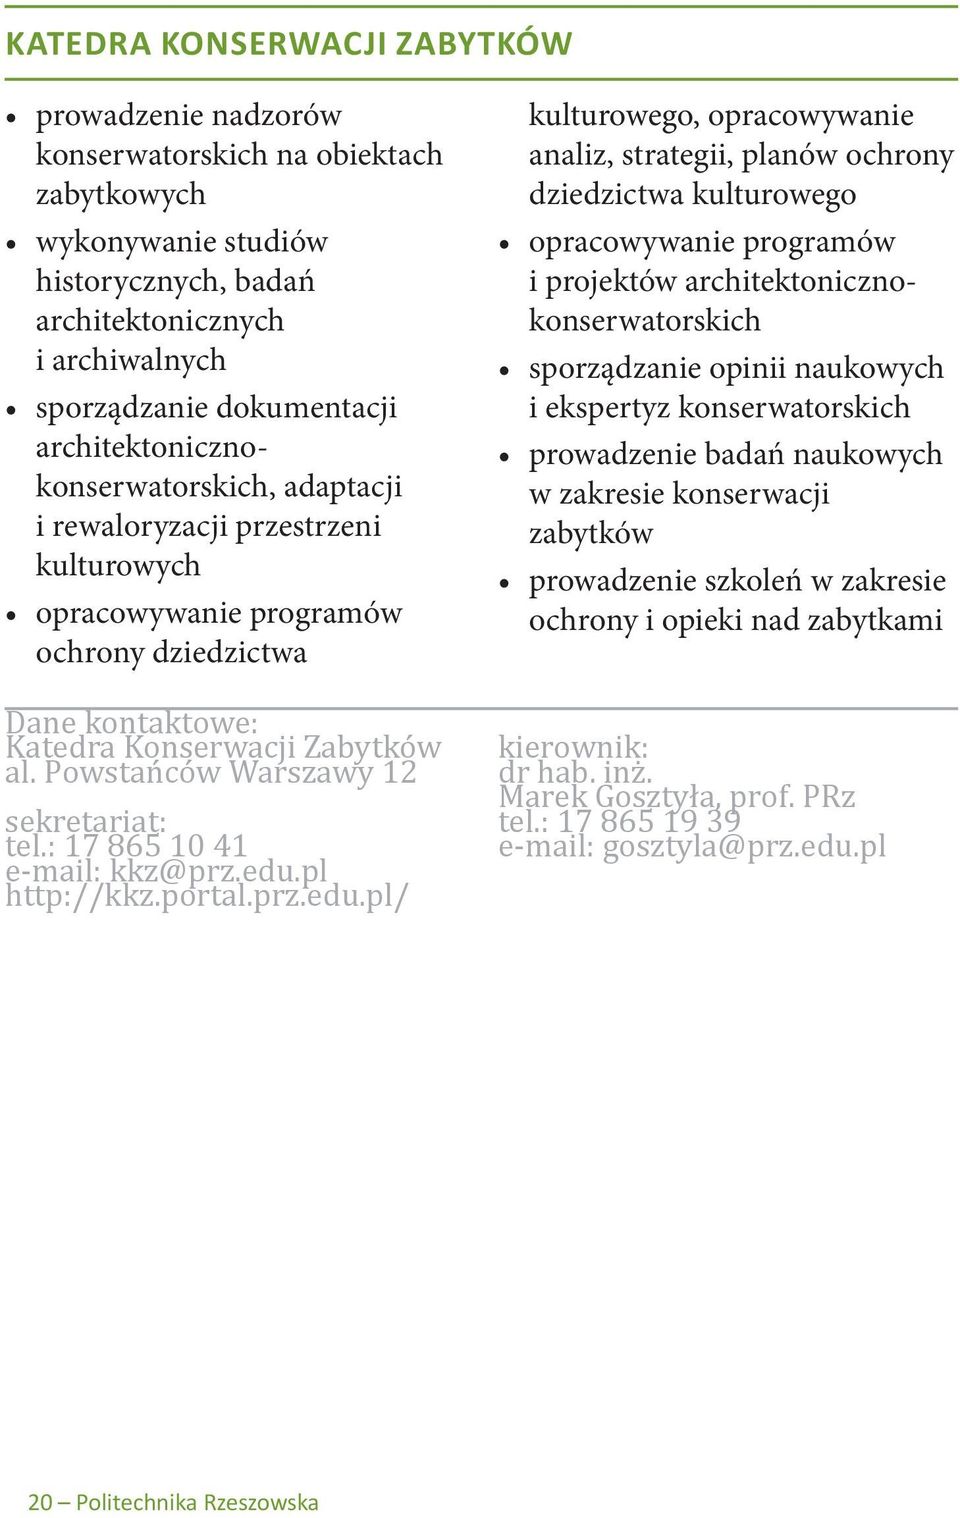 Powstańców Warszawy 12 sekretariat: tel.: 17 865 10 41 e-mail: kkz@prz.edu.